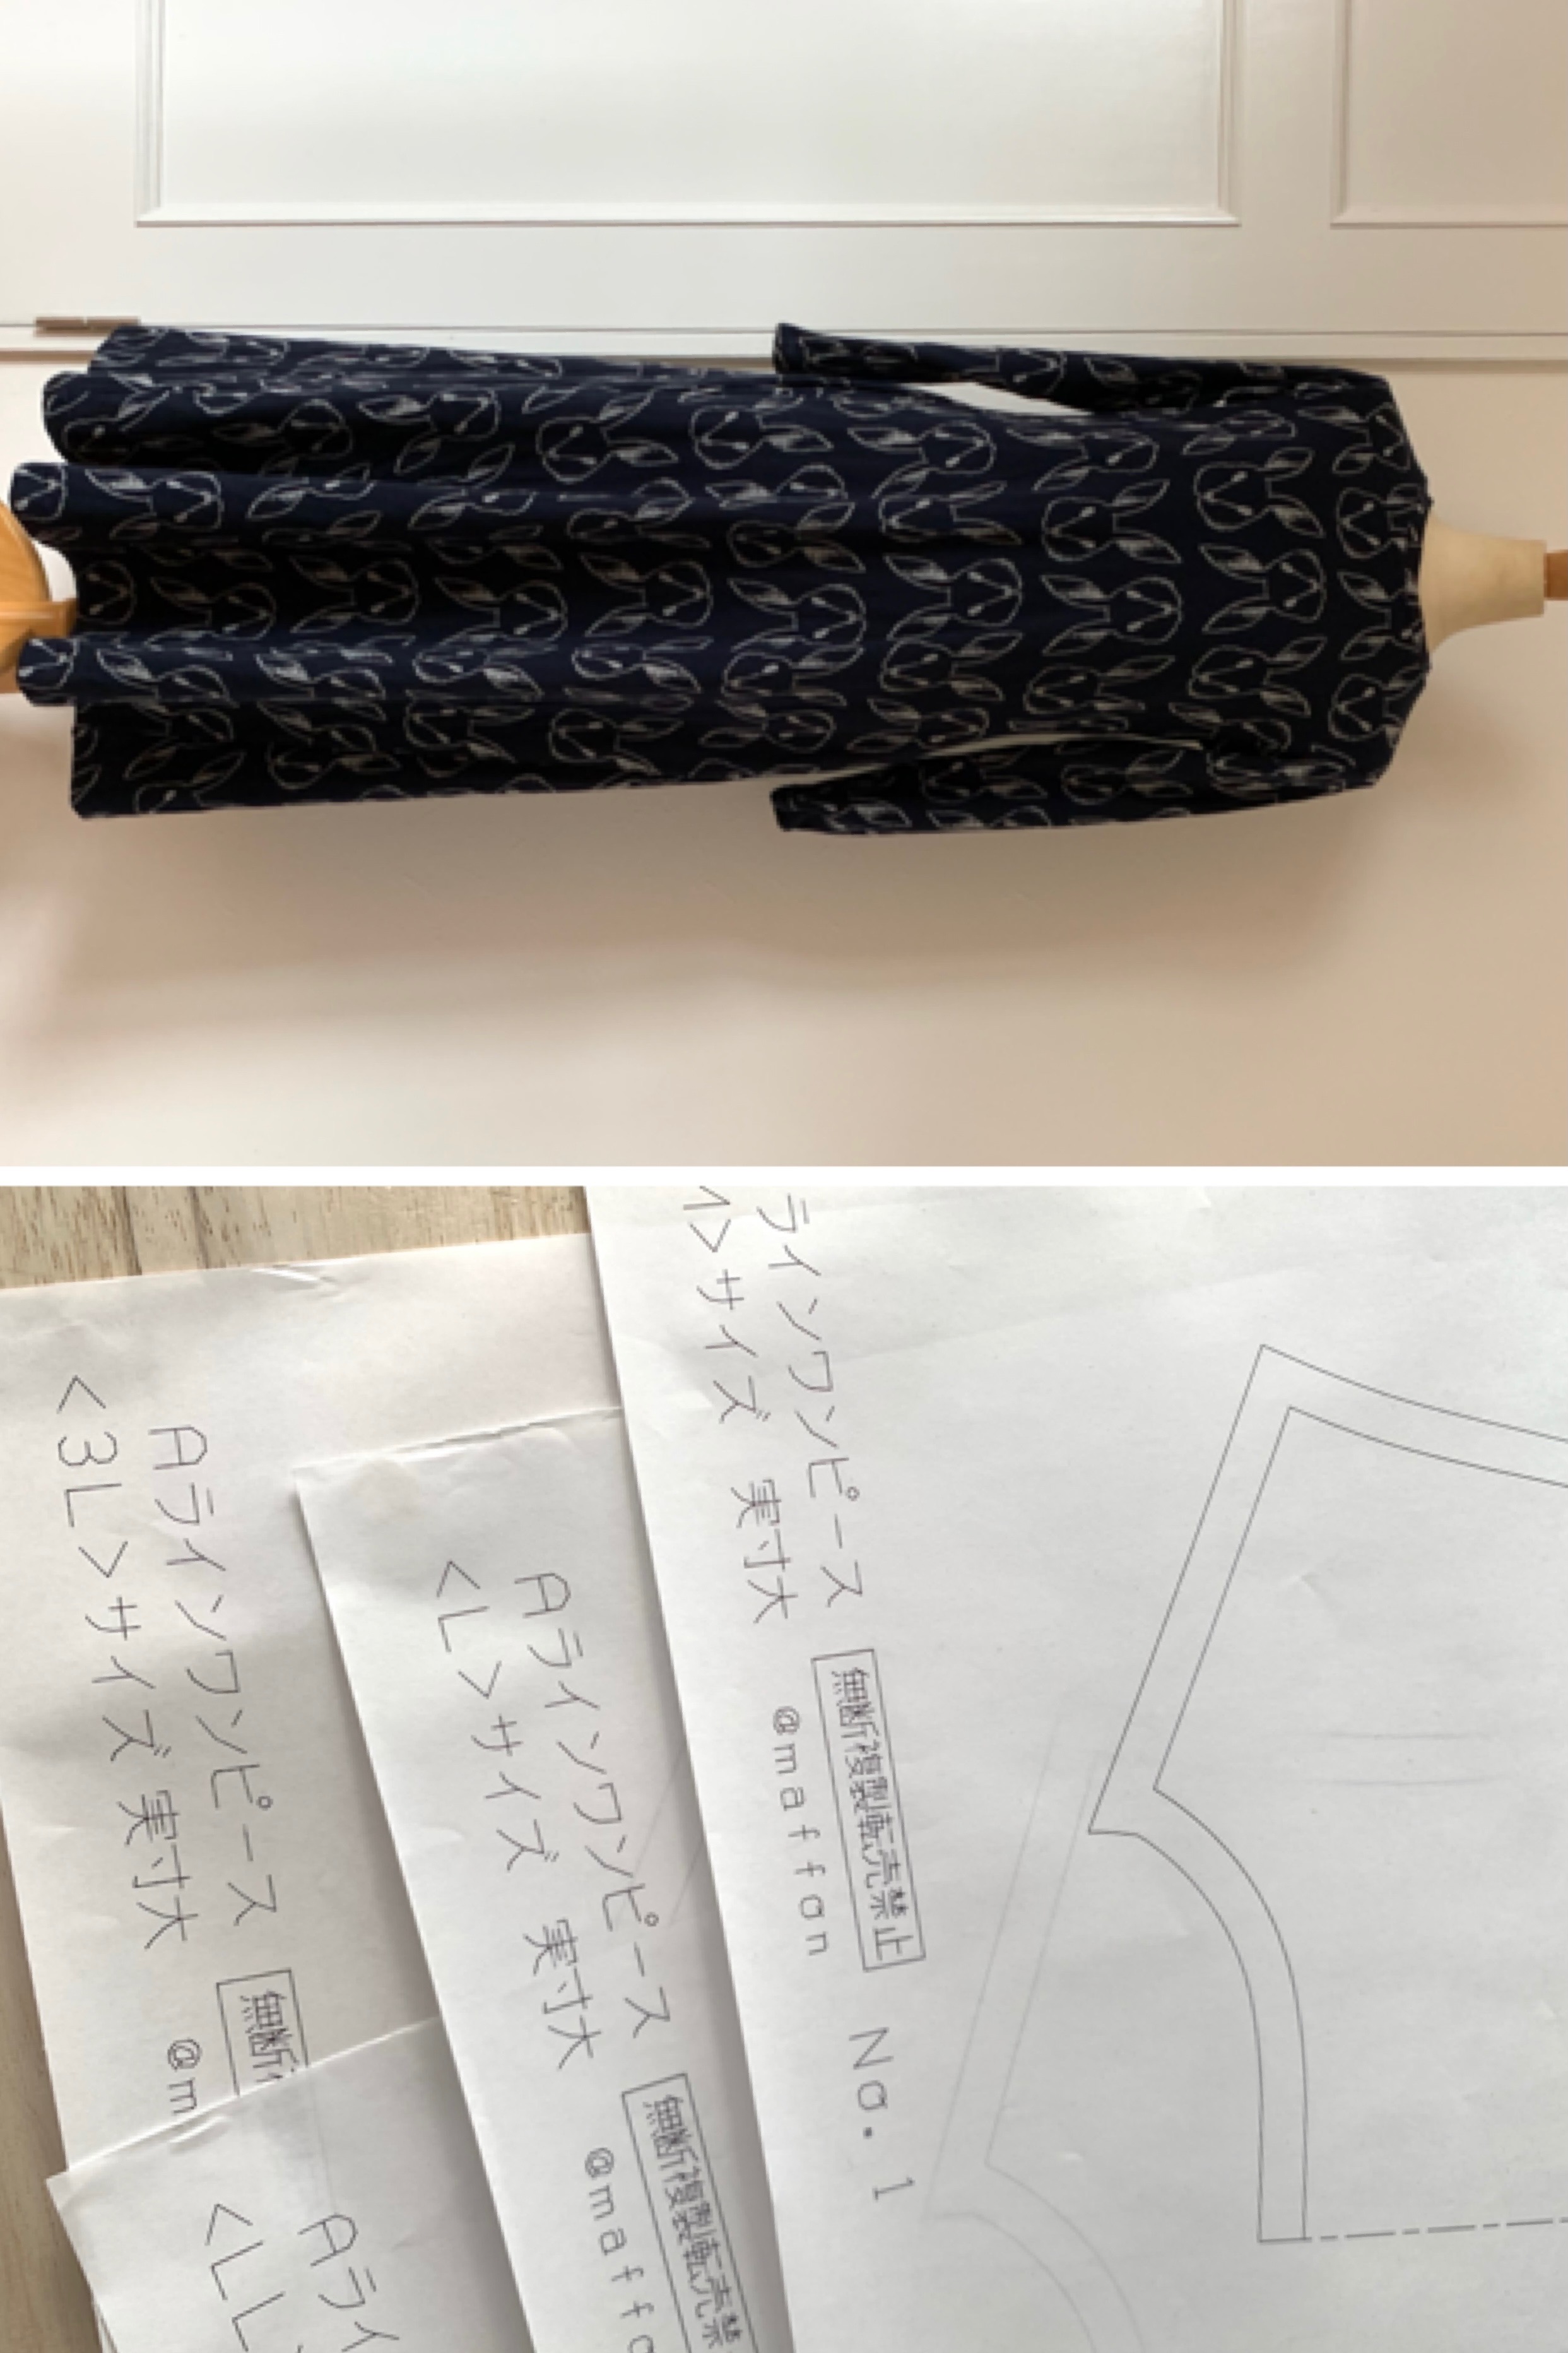 リバーシブルジャガードのニット生地のお店 Maffon Maffonのニットでつくるａラインワンピース 縫い代付き型紙 サイズ レディース3lサイズ